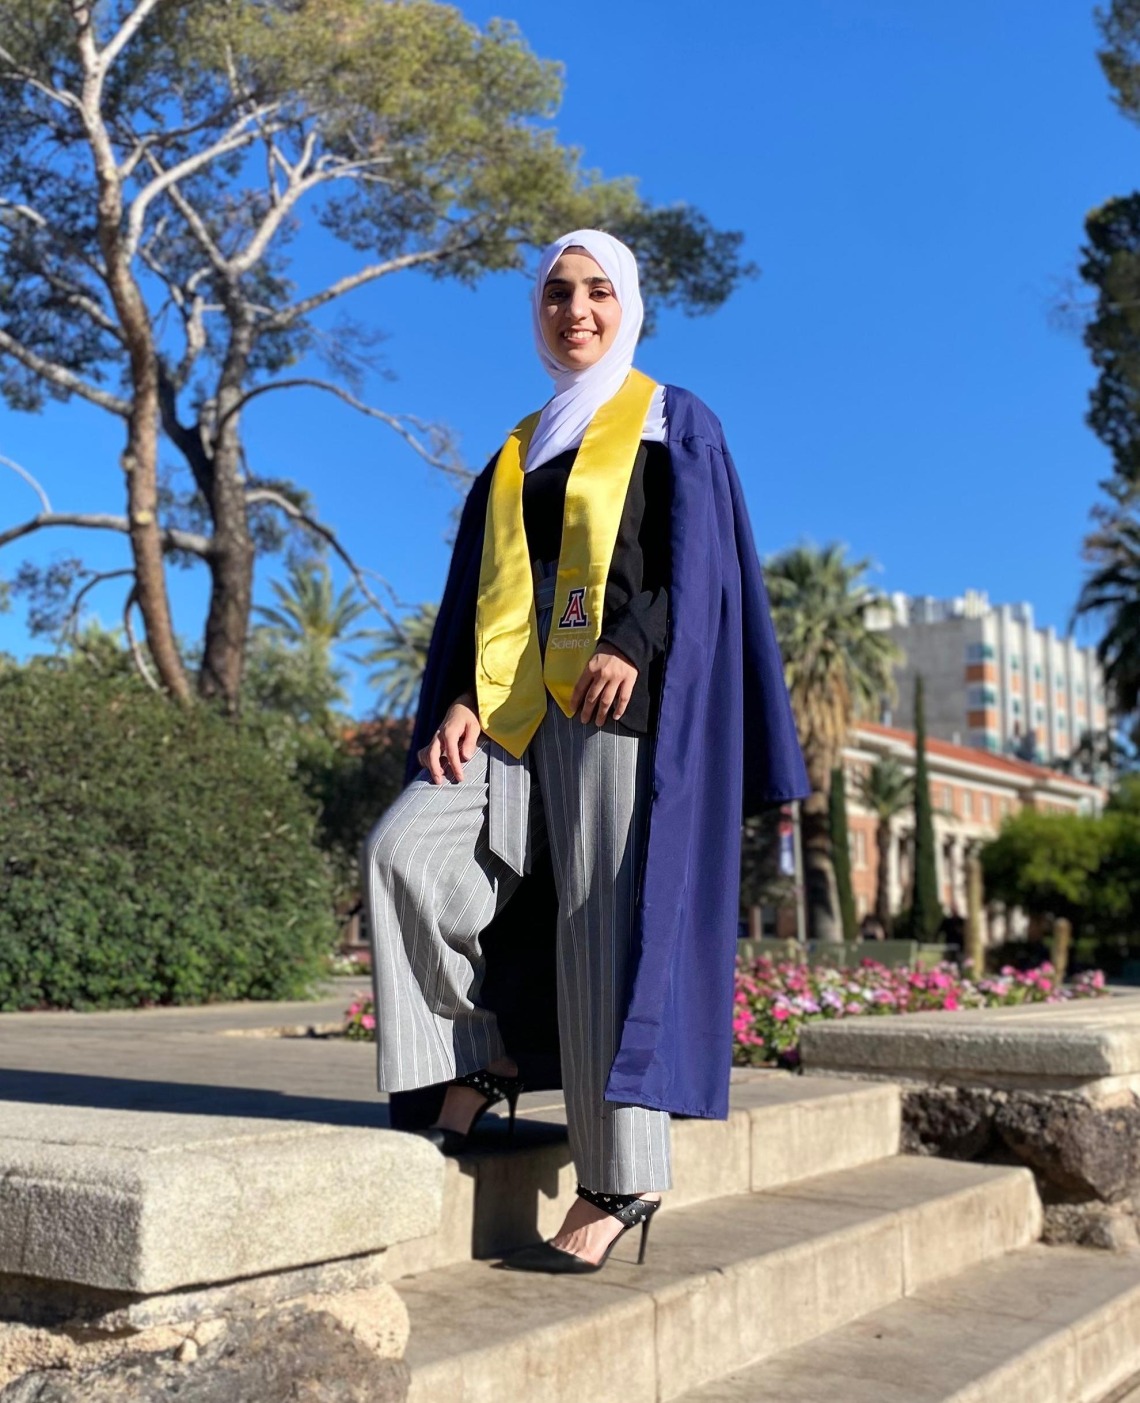 Samia Al Zahraw wearing a graduation gown